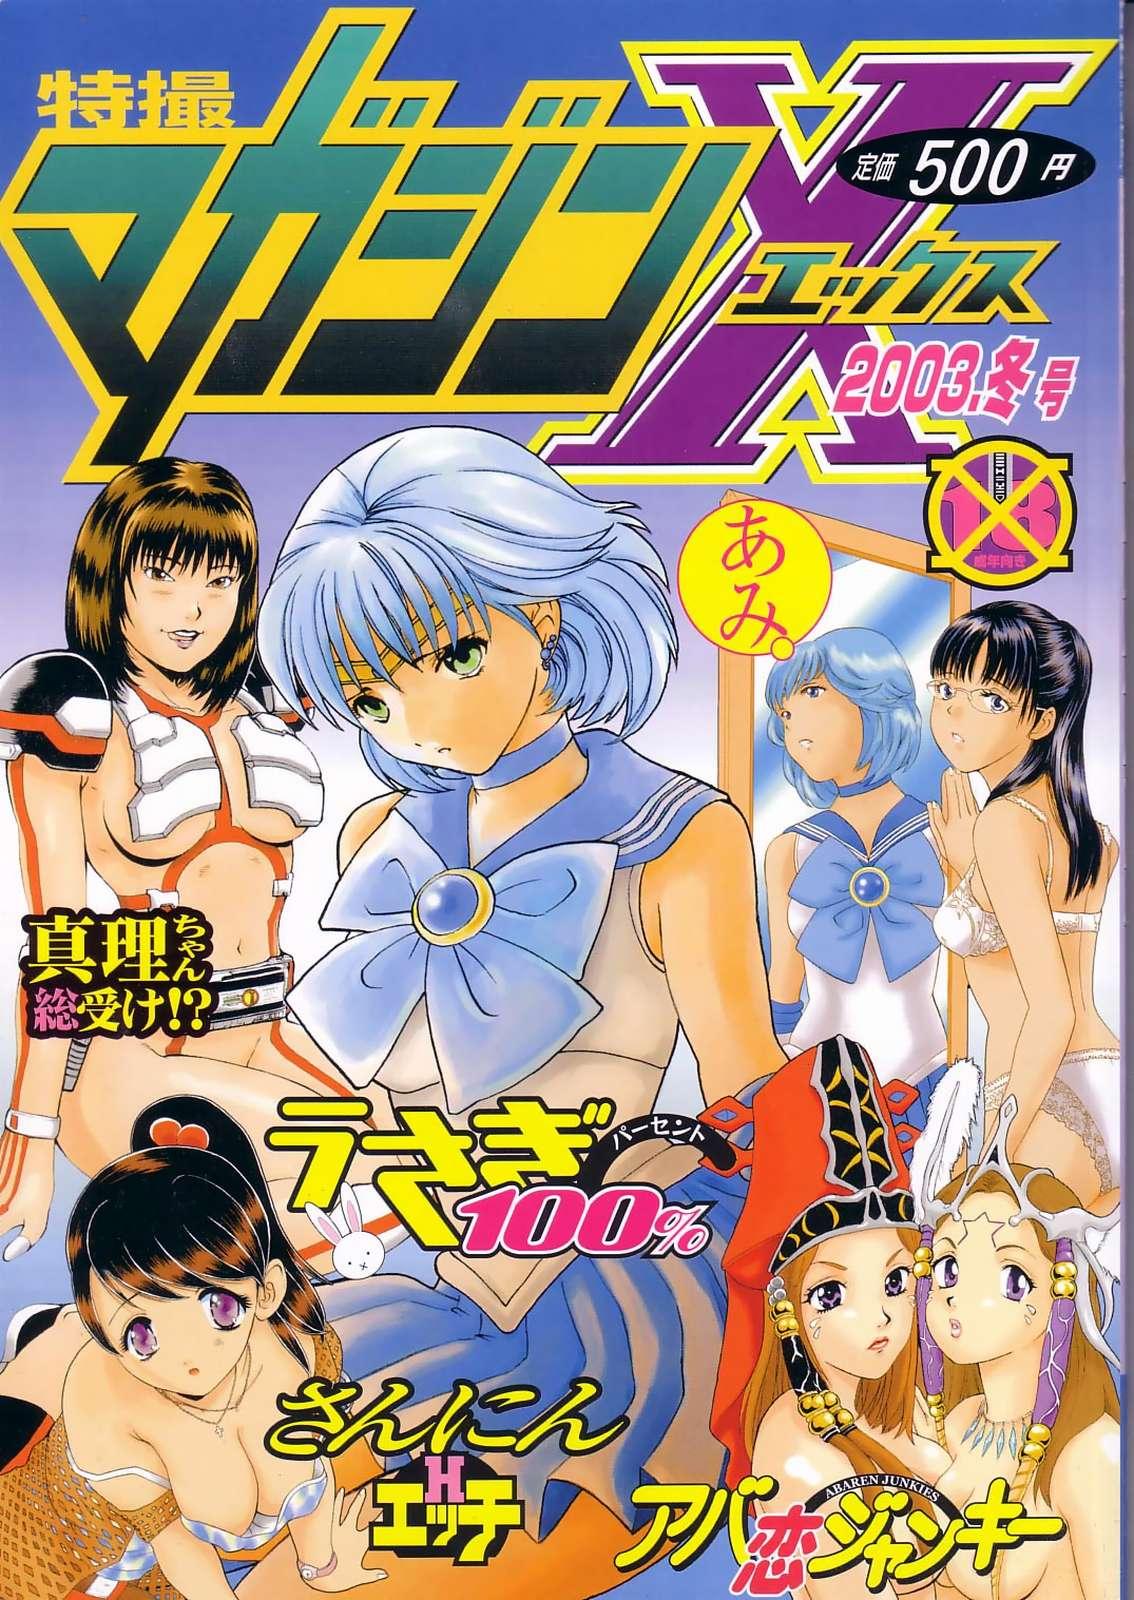 Gay 3some Tokusatsu Magazine x 2003 Fuyu Gou - Sailor moon Ichigo 100 Flash - Picture 1